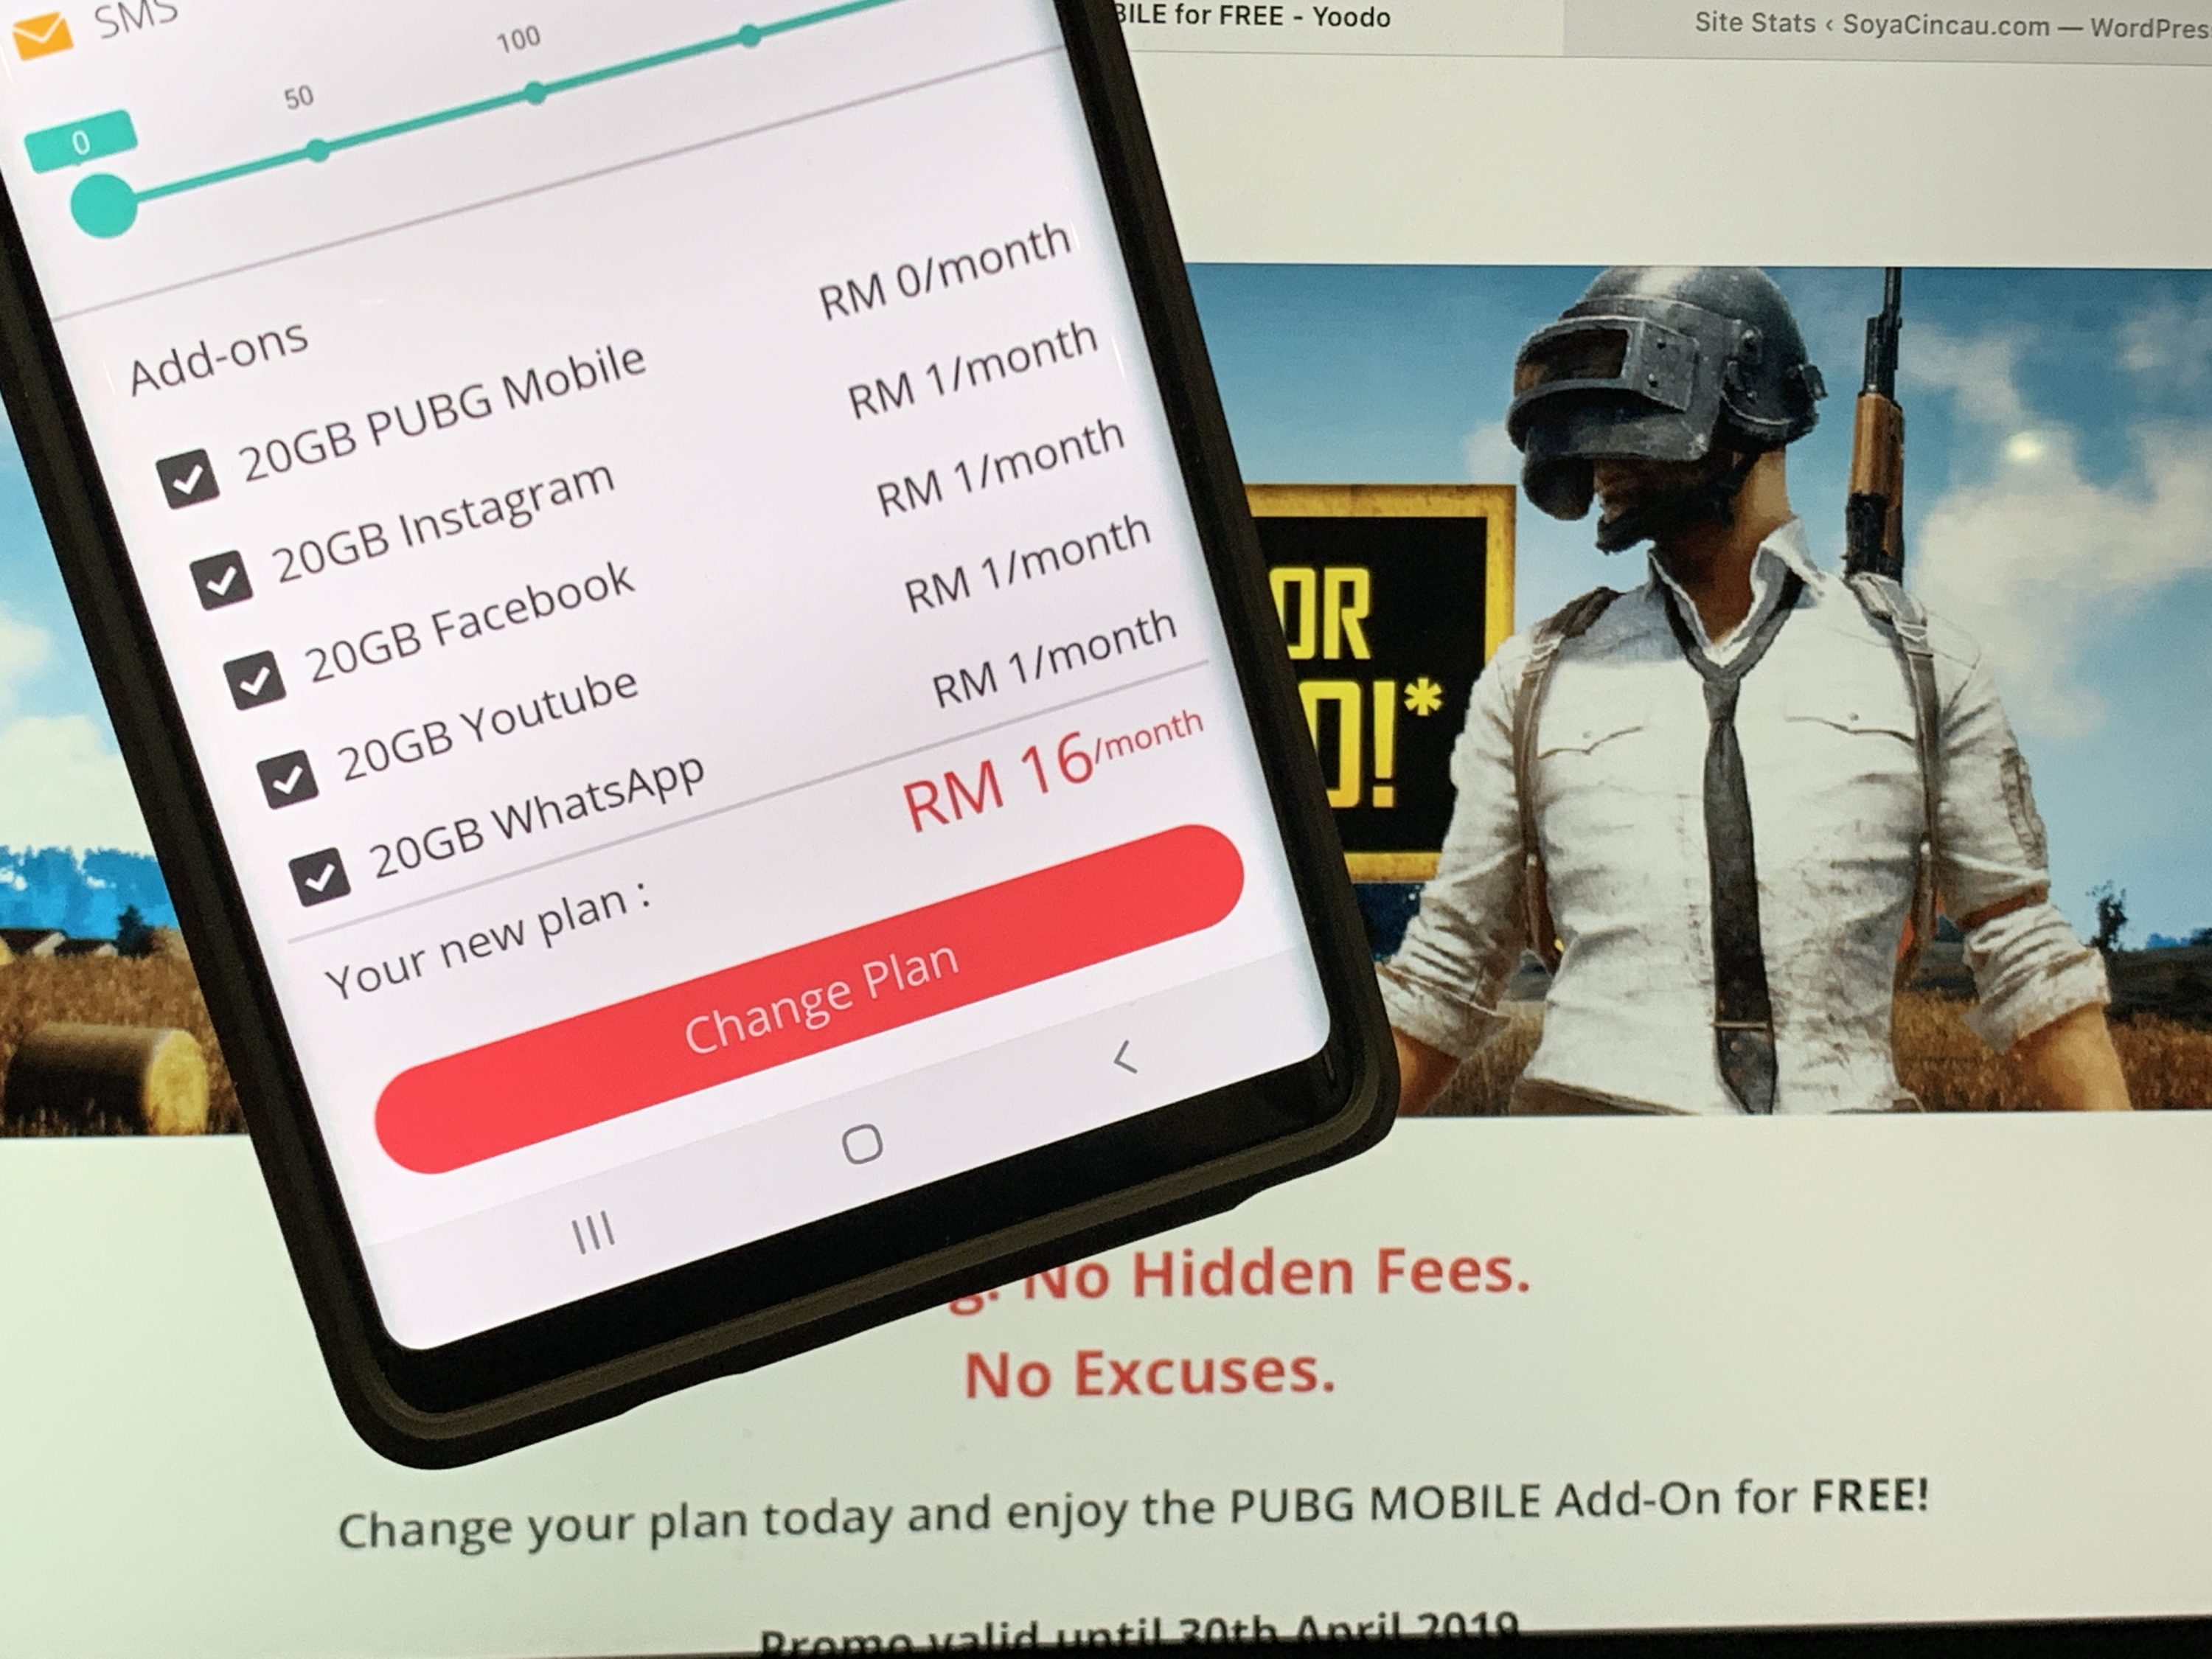 Yoodo offers free 20GB data for PUBG Mobile | SoyaCincau.com - 